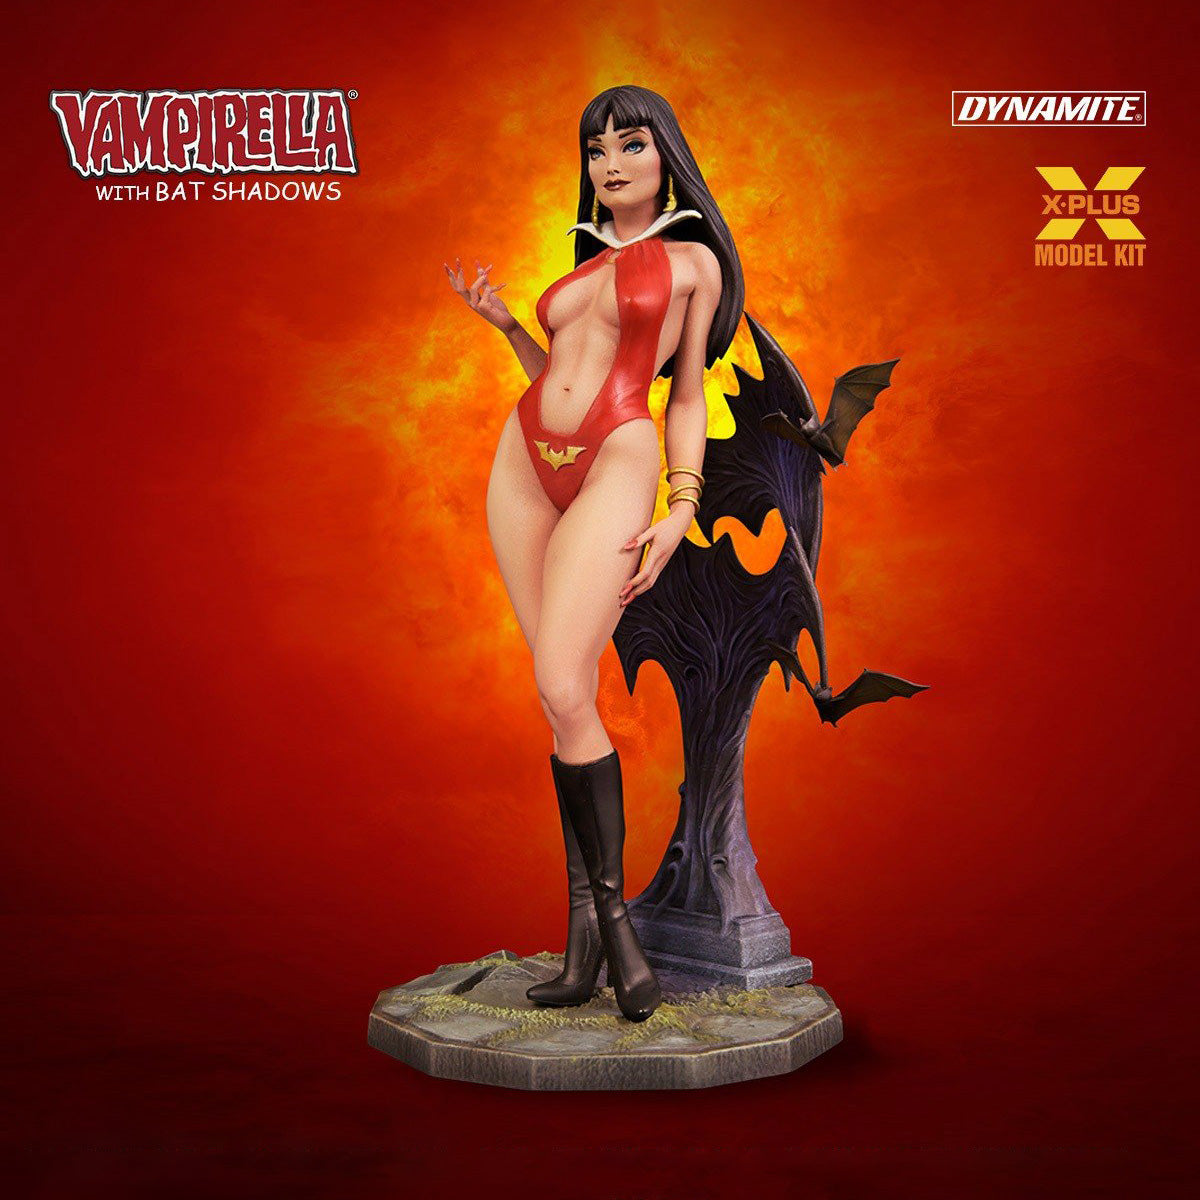 X-Plus - Dynamite - Vampirella with Bat Shadows Model Kit (1/8 Scale) (Reissue) - Marvelous Toys